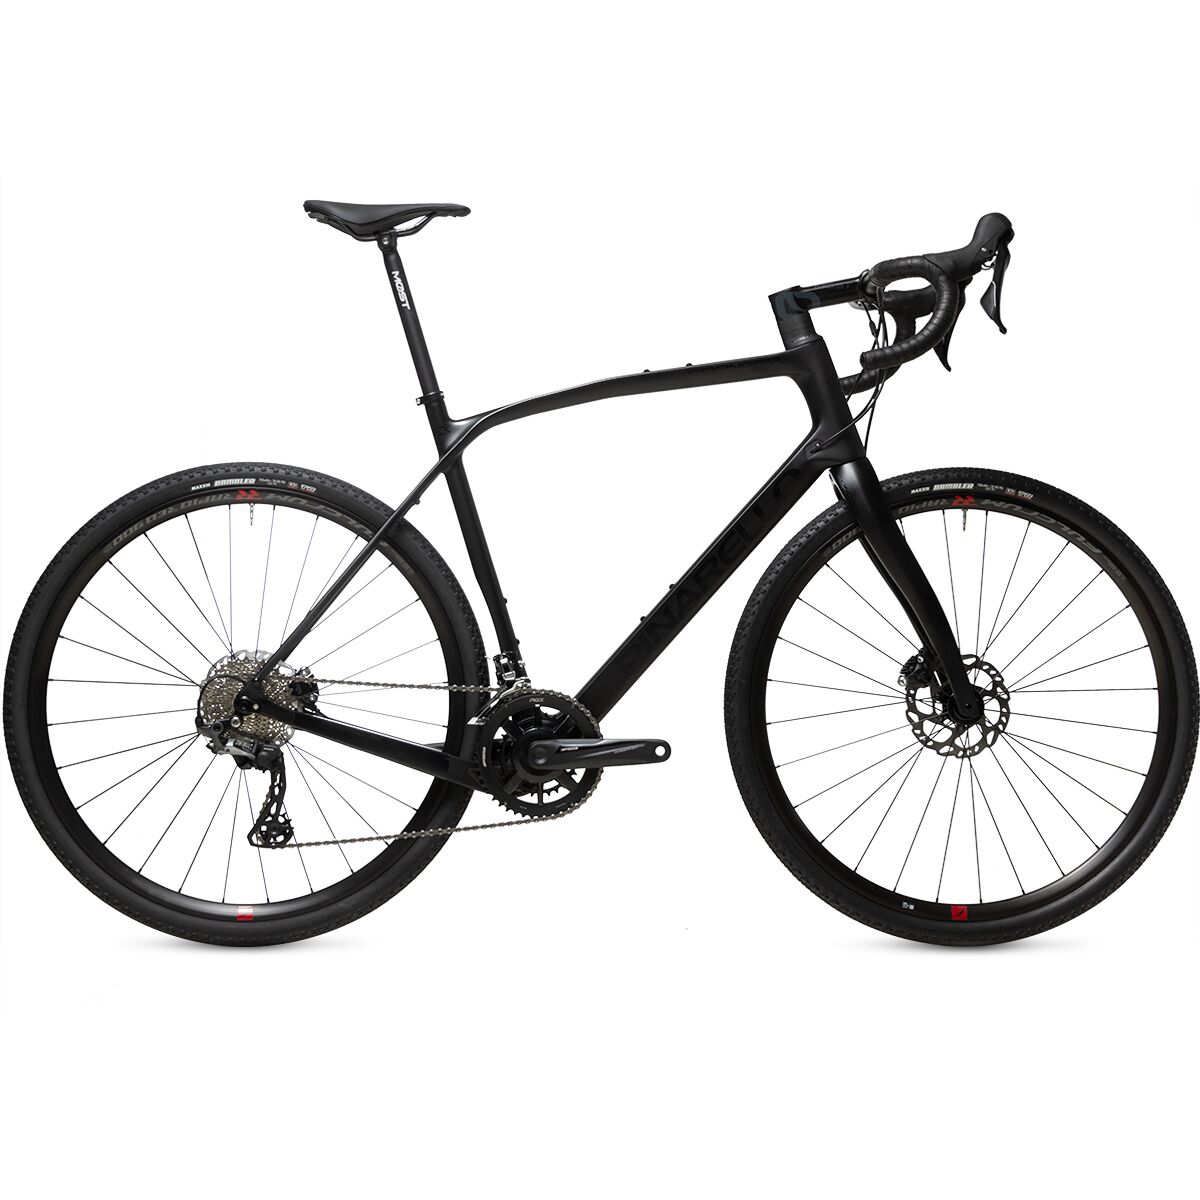 Pinarello Granger X1 GRX 600 Gravel Bike Black on Black, 50cm -  D1610008146-00002